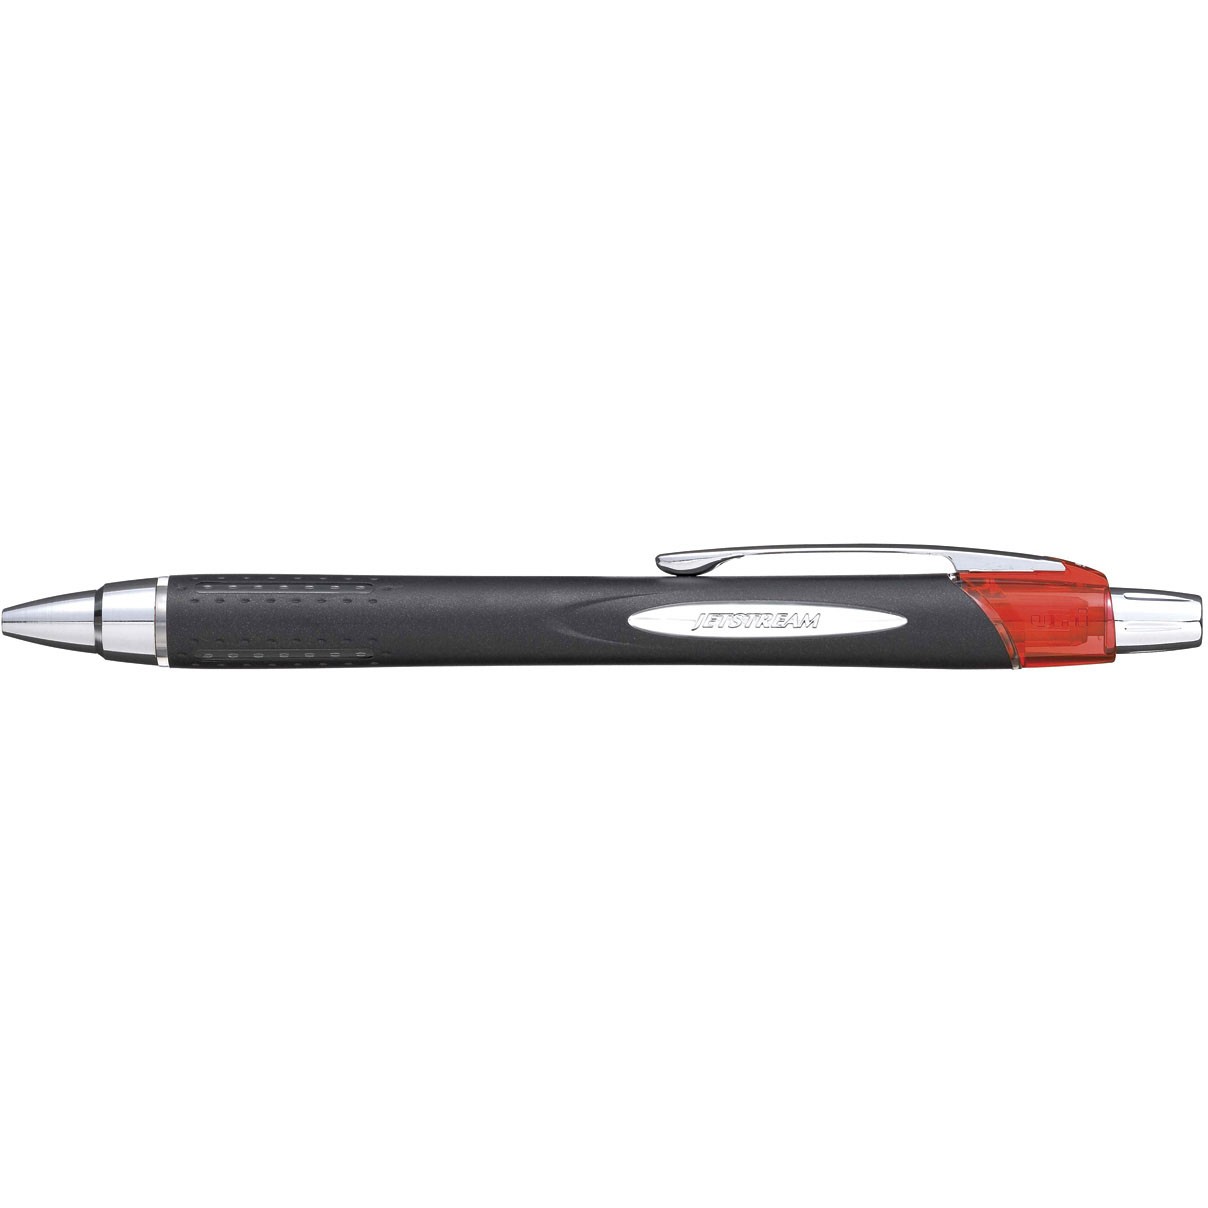 Uni-ball Jetstream pen med 0,45 mm spids i farven rød